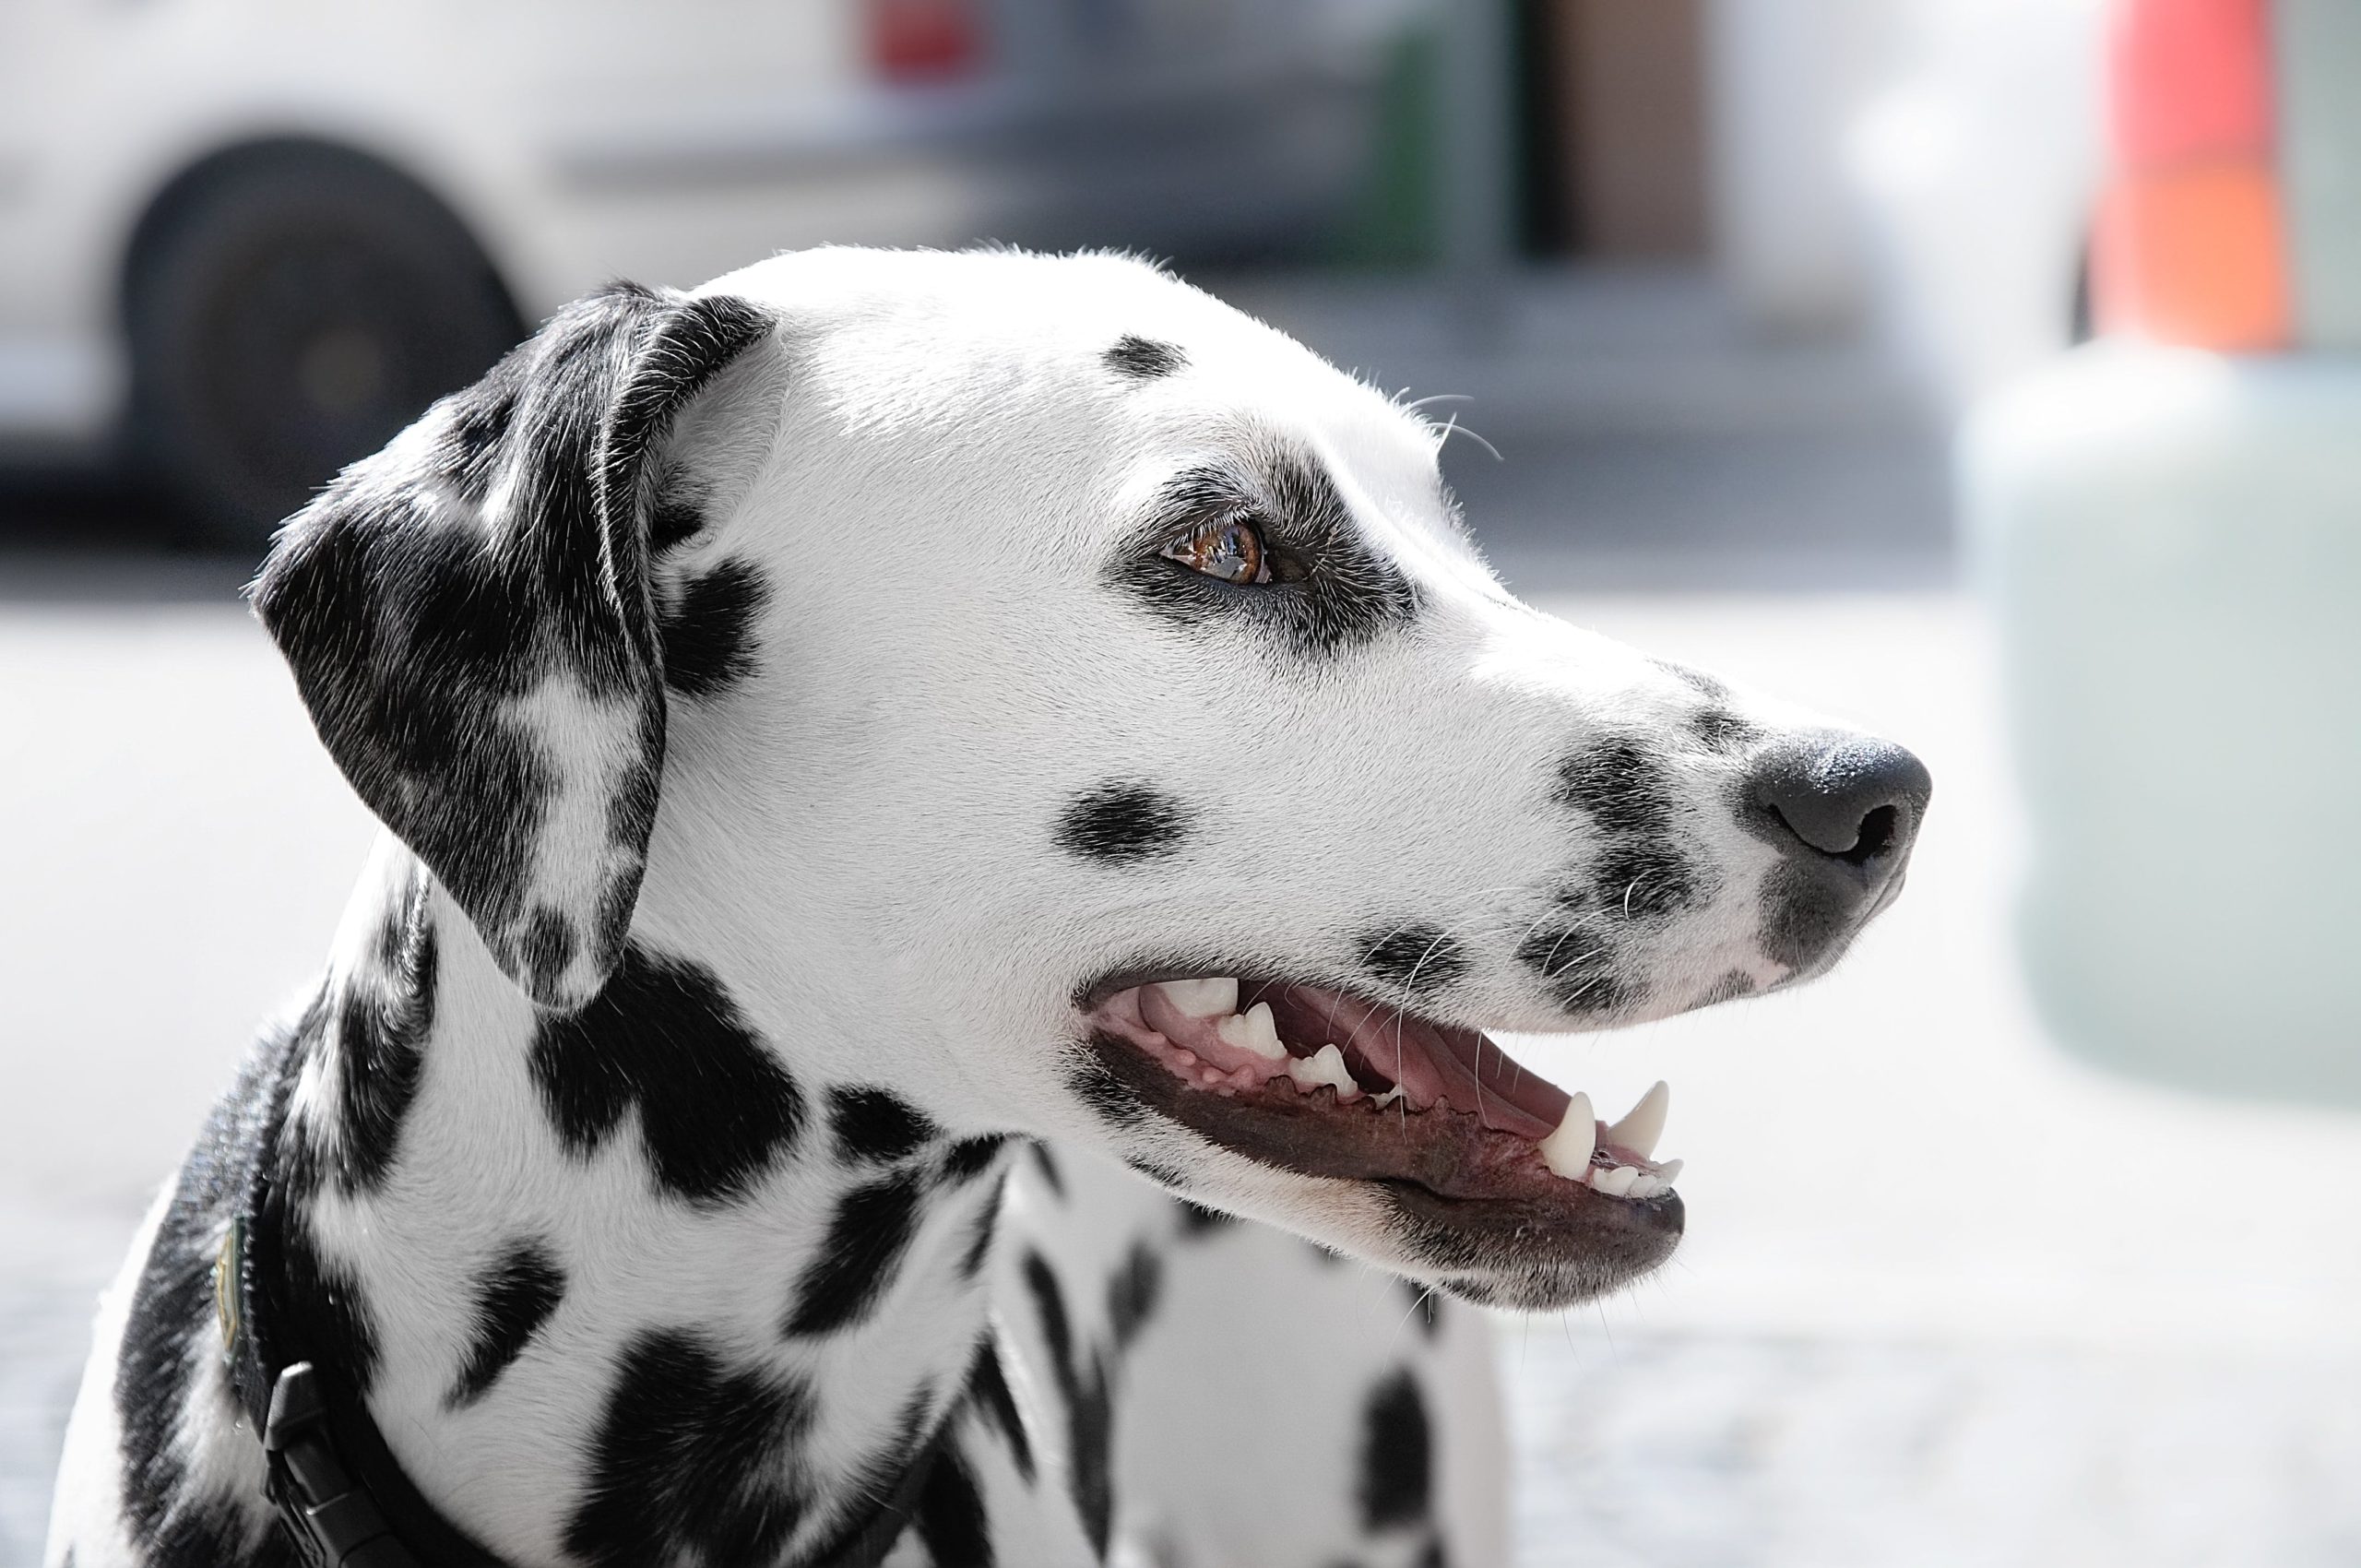 Dalmatier hondenras staat bekend om zijn unieke, gevlekte vacht, die kort, zacht en glanzend is. De vlekken zijn zwart of leverkleurig op een witte achtergrond.